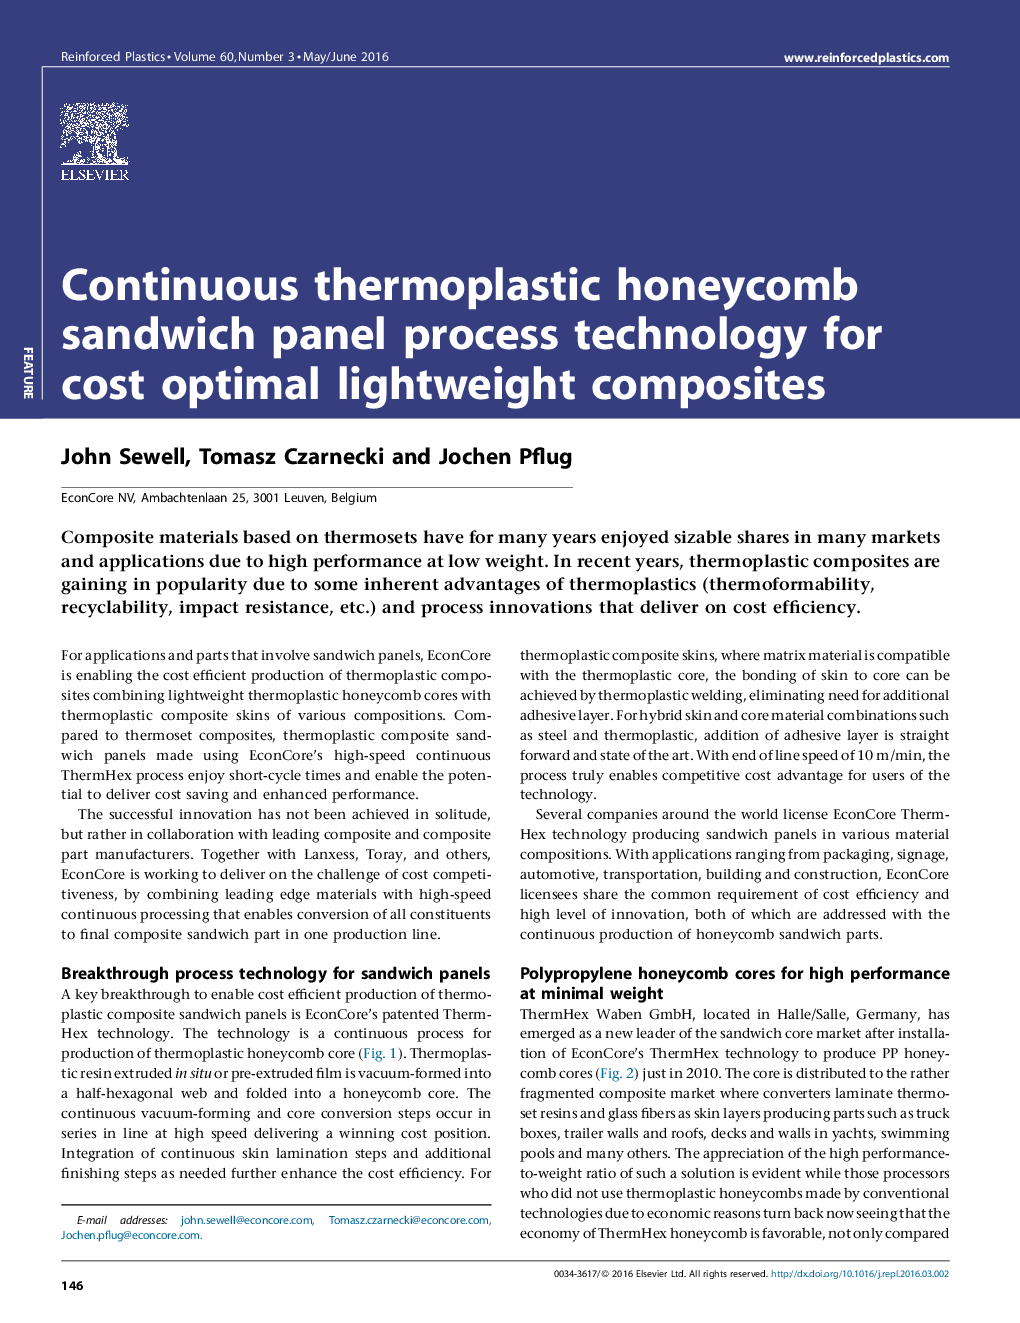 تکنولوژی پردازش پانل ساندویچ سلولهای ترموپلاستیک مداوم برای کامپوزیتهای سبک وزن کم هزینه